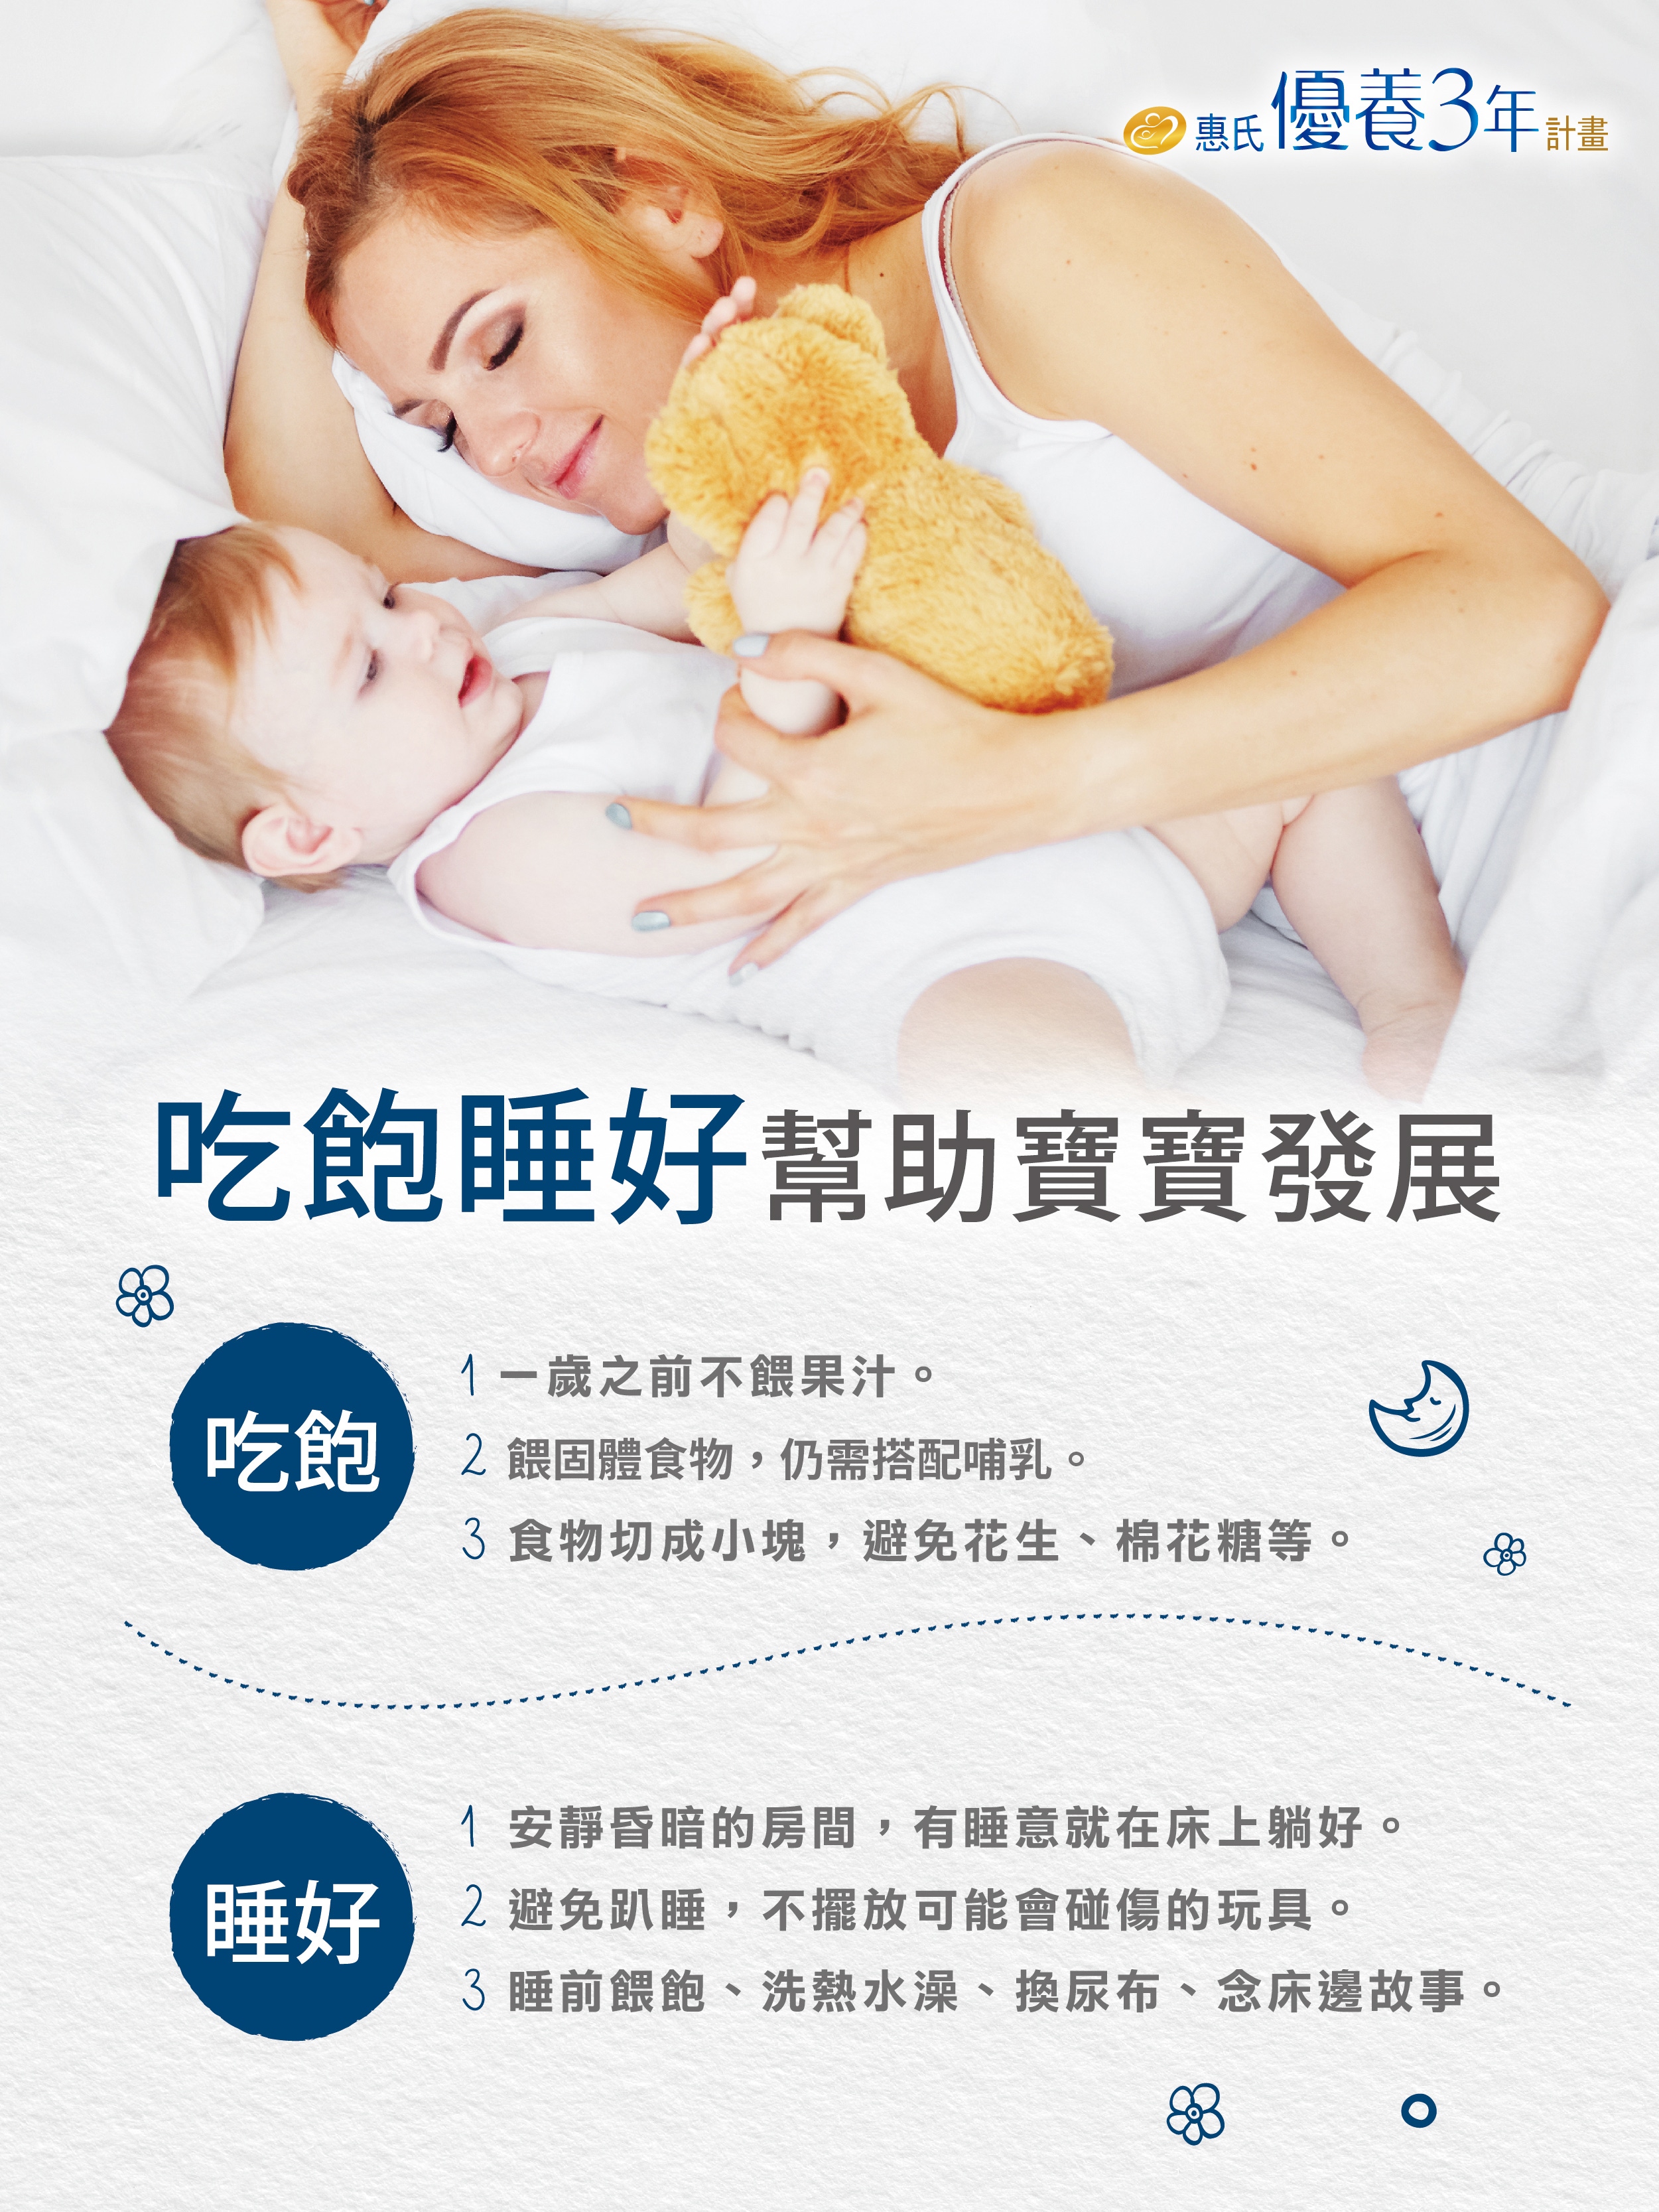 ▲ 吃飽睡好是寶寶健康發展的重要關鍵，因此寶寶睡眠時間要夠、睡覺也要睡得安穩才行。